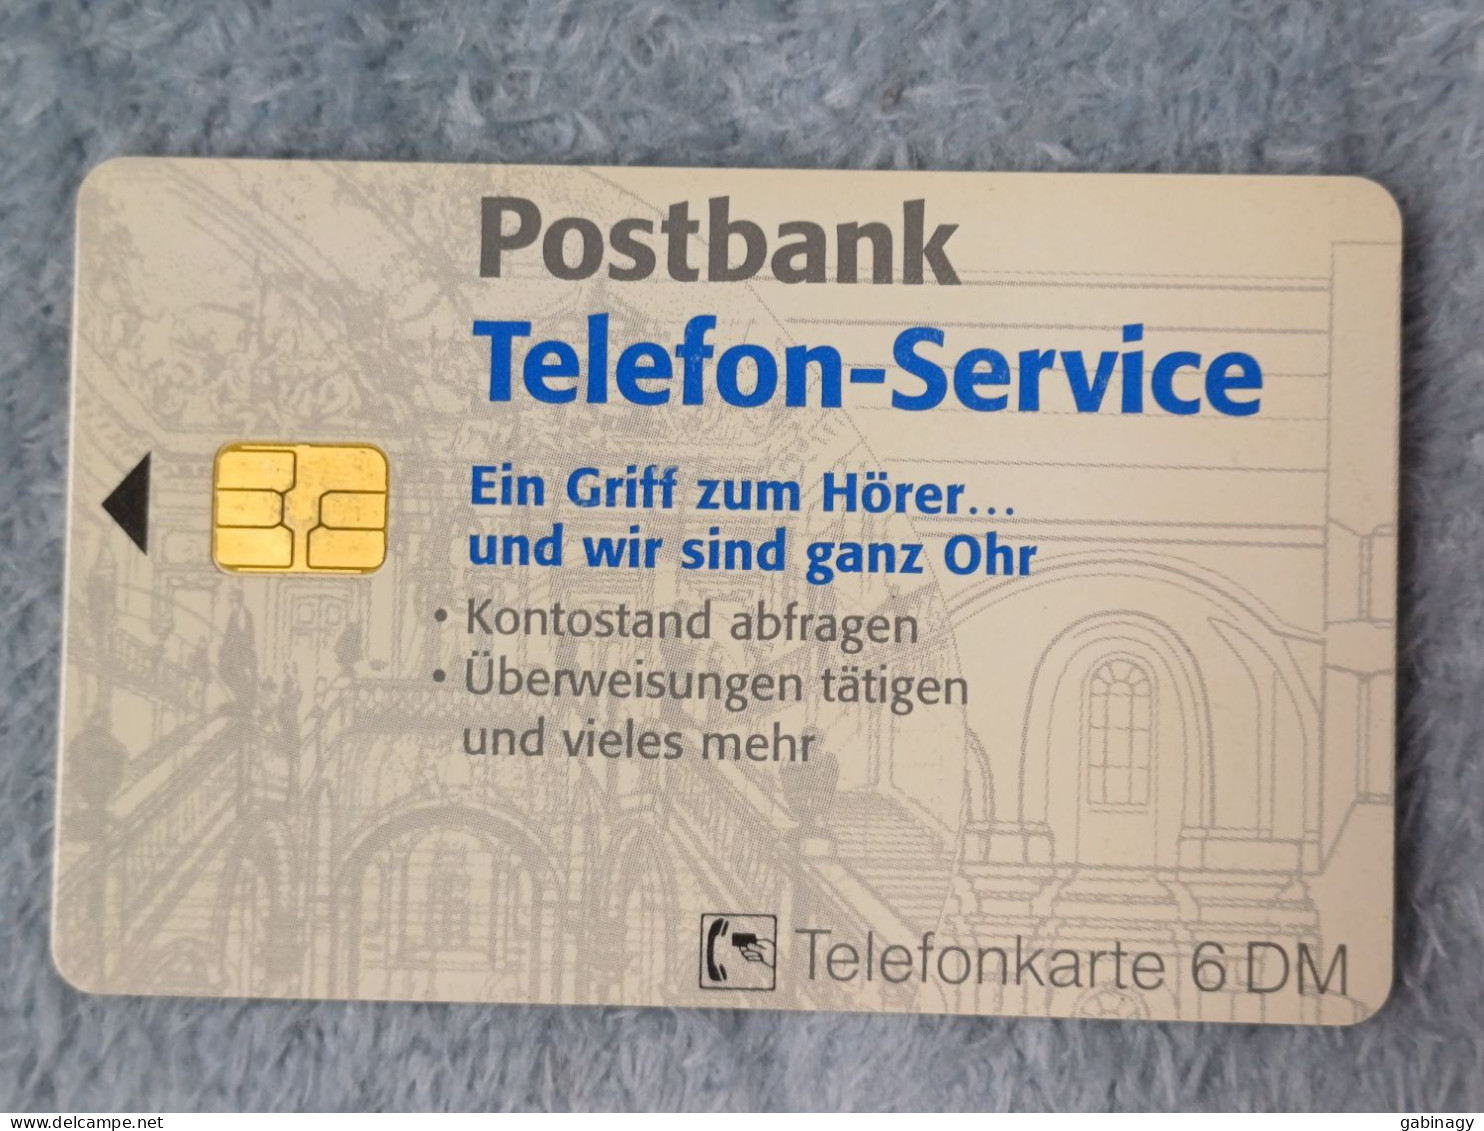 GERMANY-1132 - O 2889 - Postbank – Telefon-Service (Geldschein-Gesichter) - 26.000ex. - O-Series: Kundenserie Vom Sammlerservice Ausgeschlossen